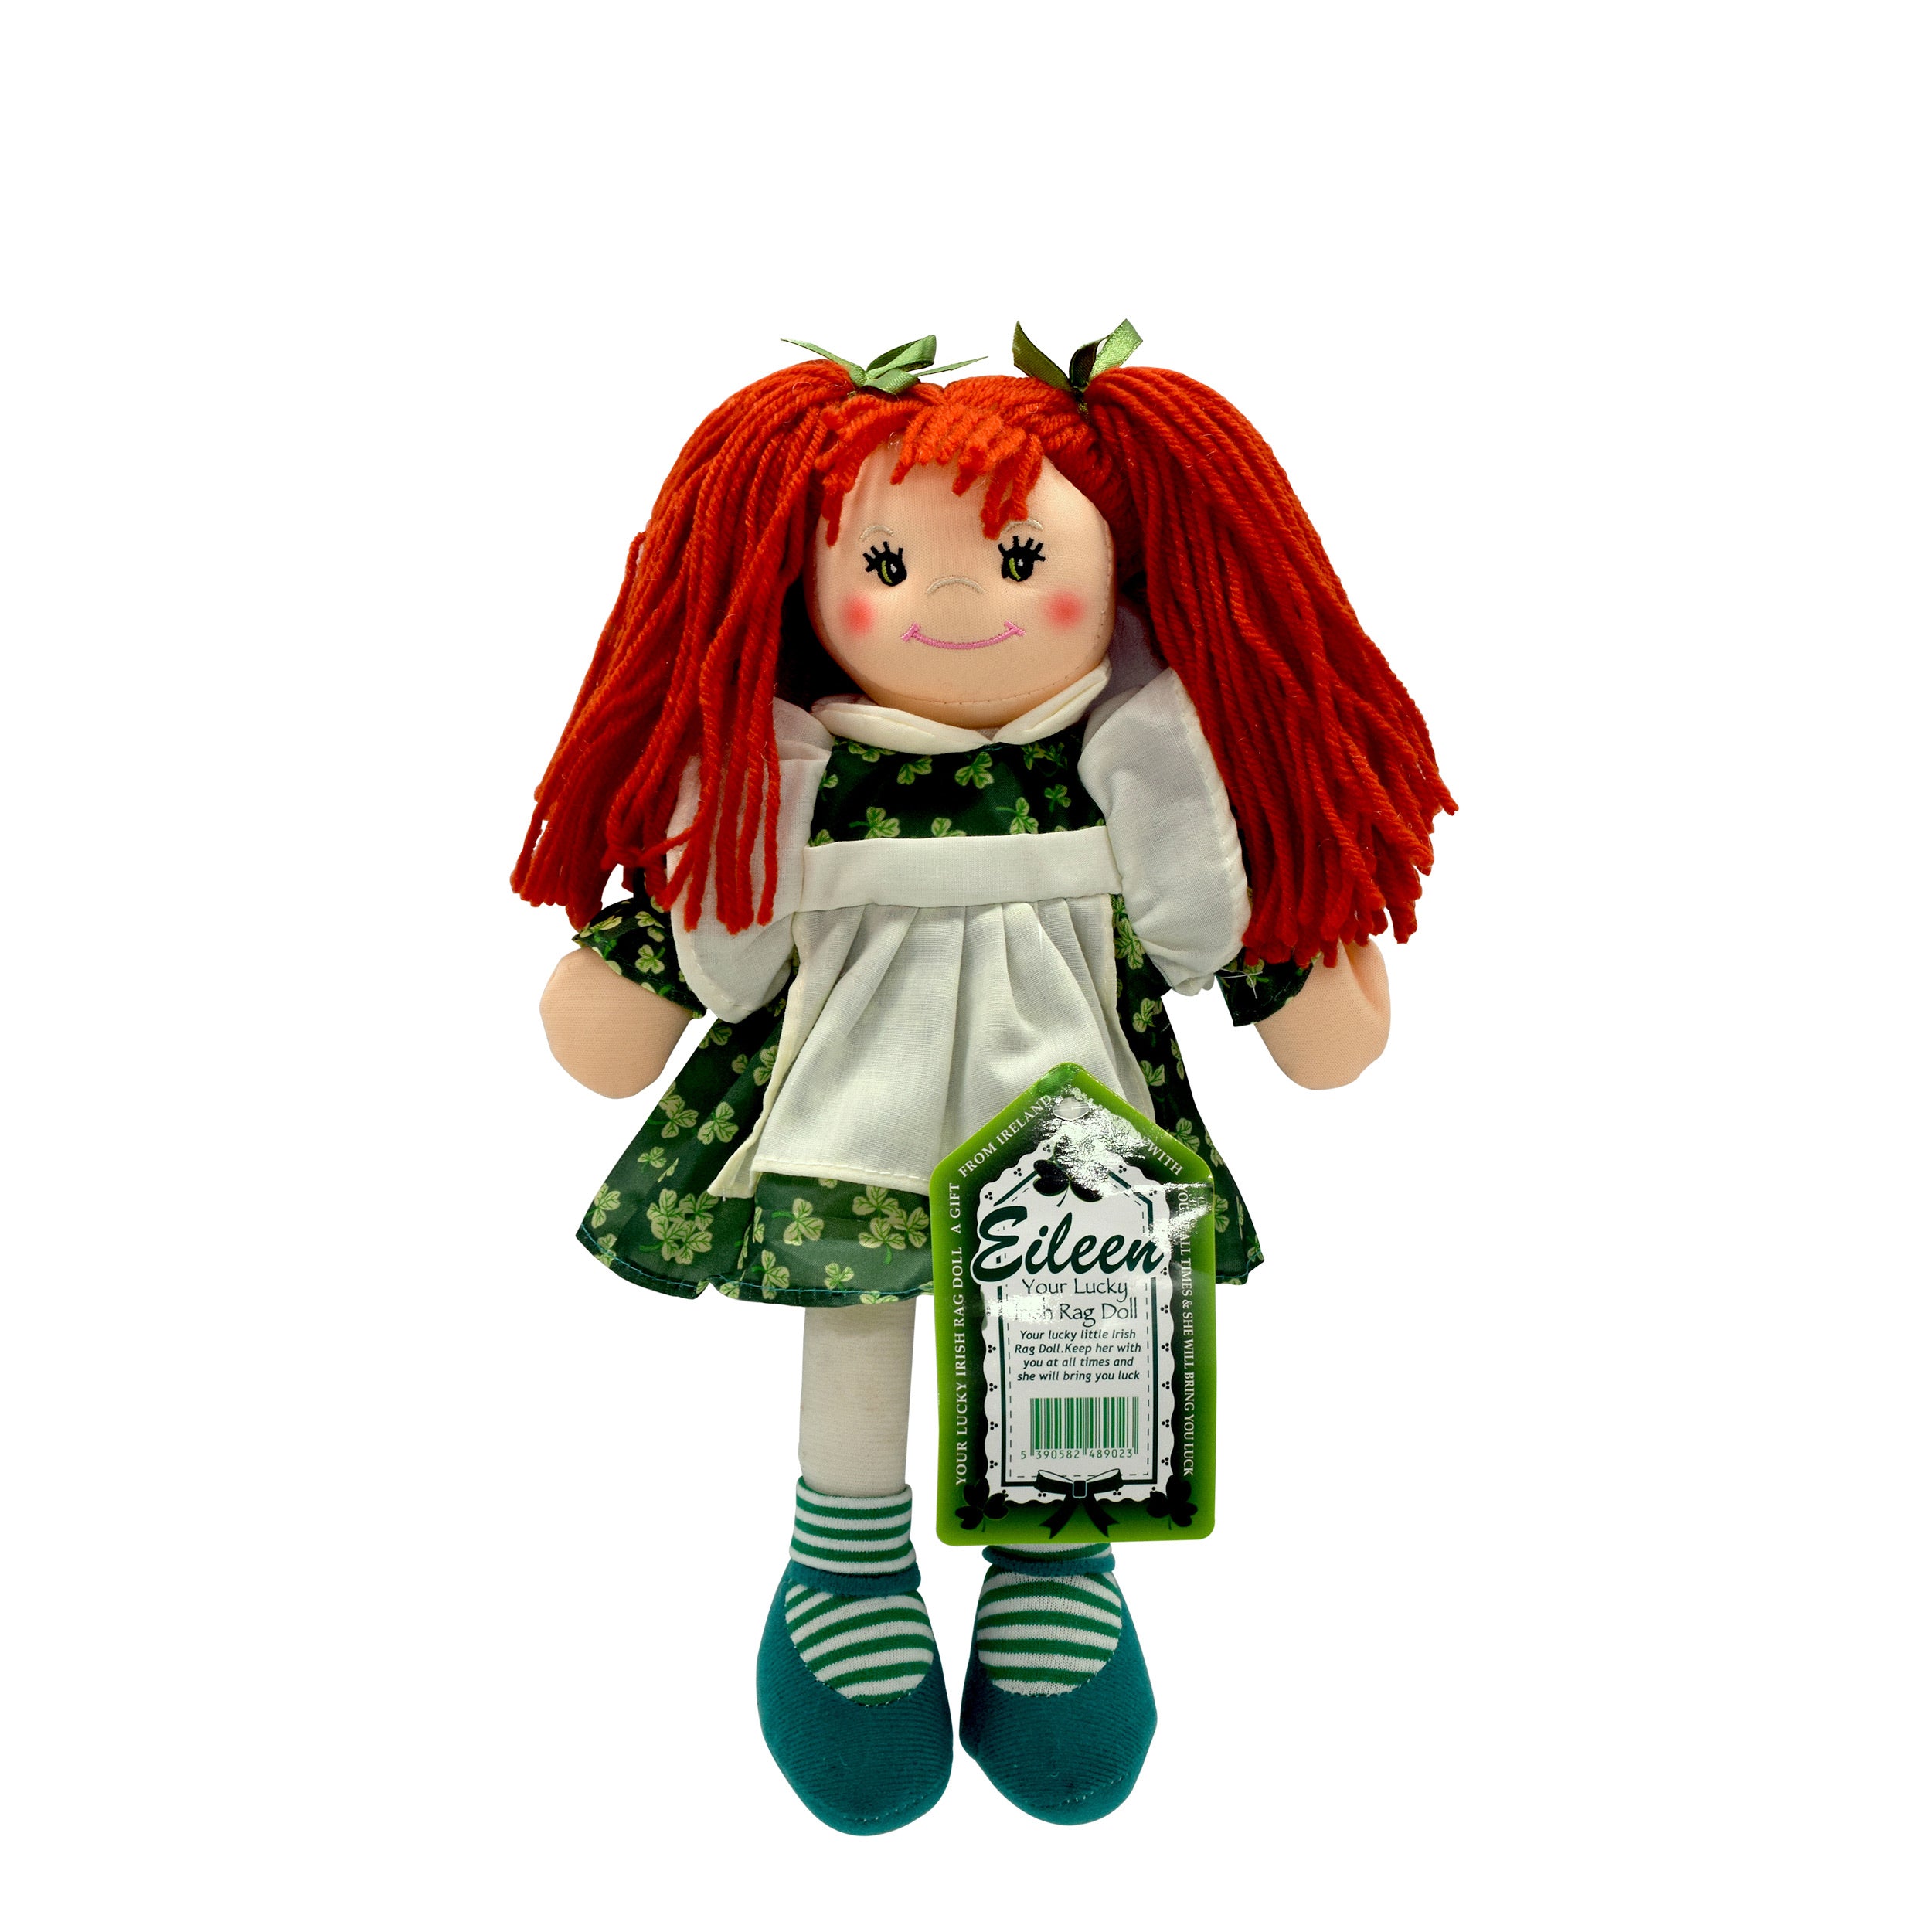 “Eileen” lucky Irish rag doll